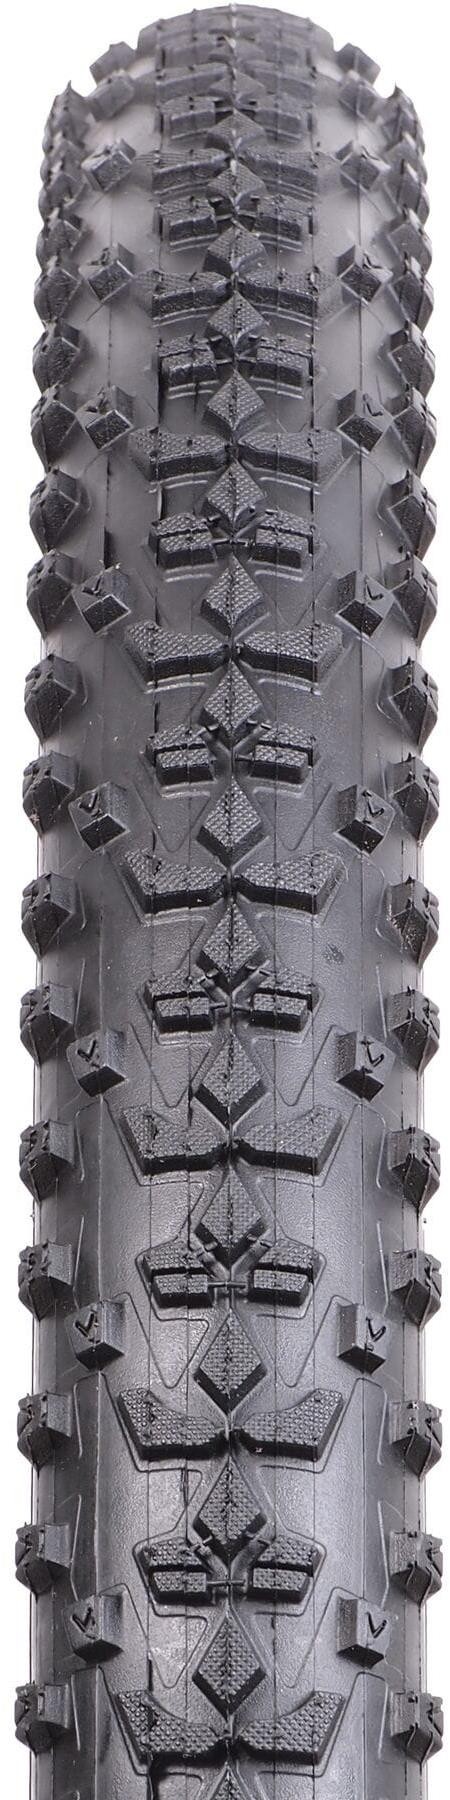 Uproar 29" MTB Tyre image 1